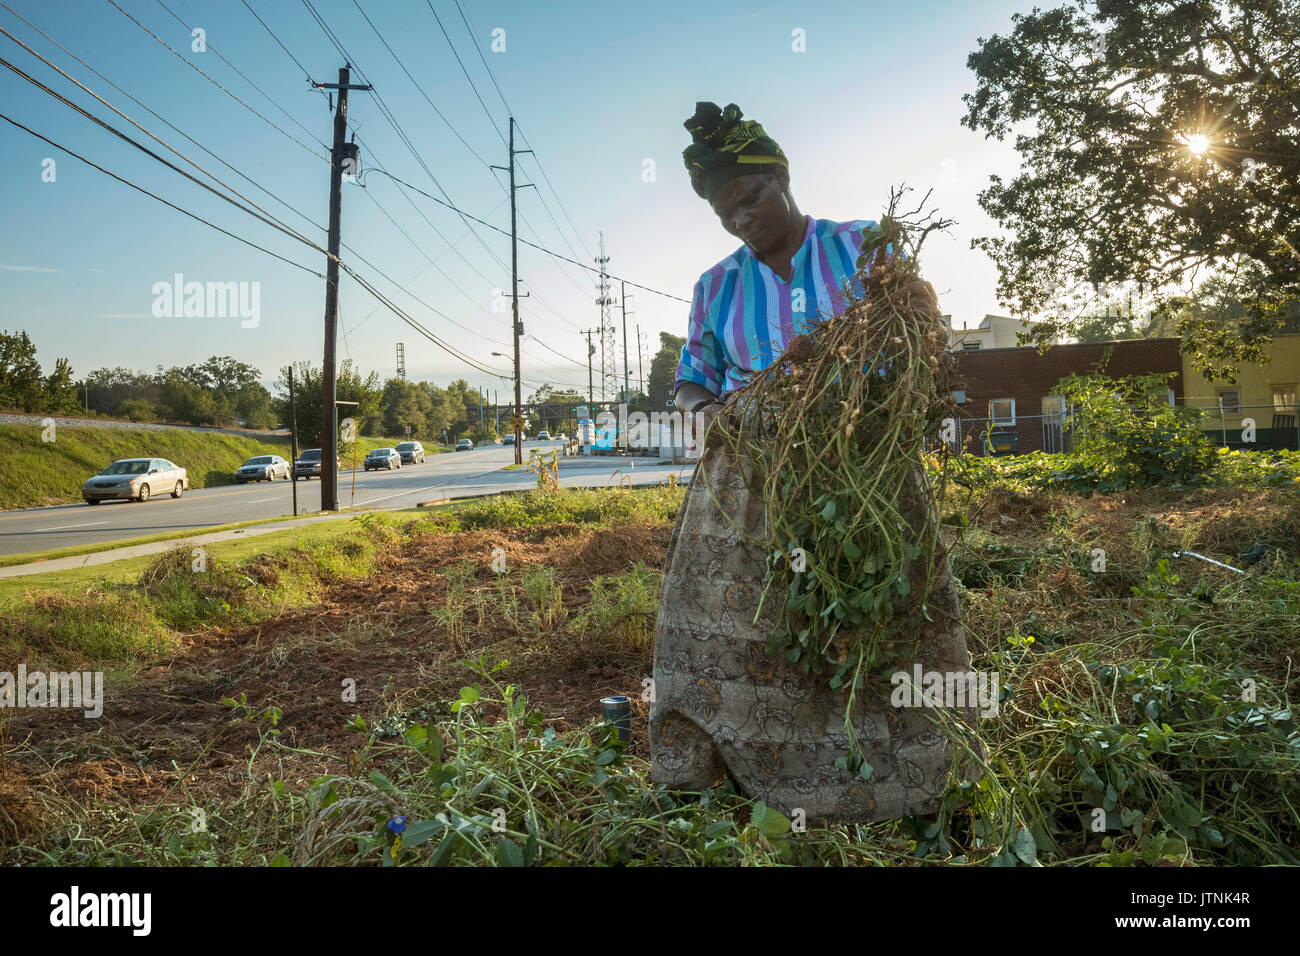 Haltet Hatungimana, balançant hoe, et Jeanne Nyibizi la récolte des arachides sur une parcelle de terrain dans la région de Decatur, GA. Ils sont des réfugiés du Burundi et de vendre leur production par des producteurs mondiaux. Banque D'Images